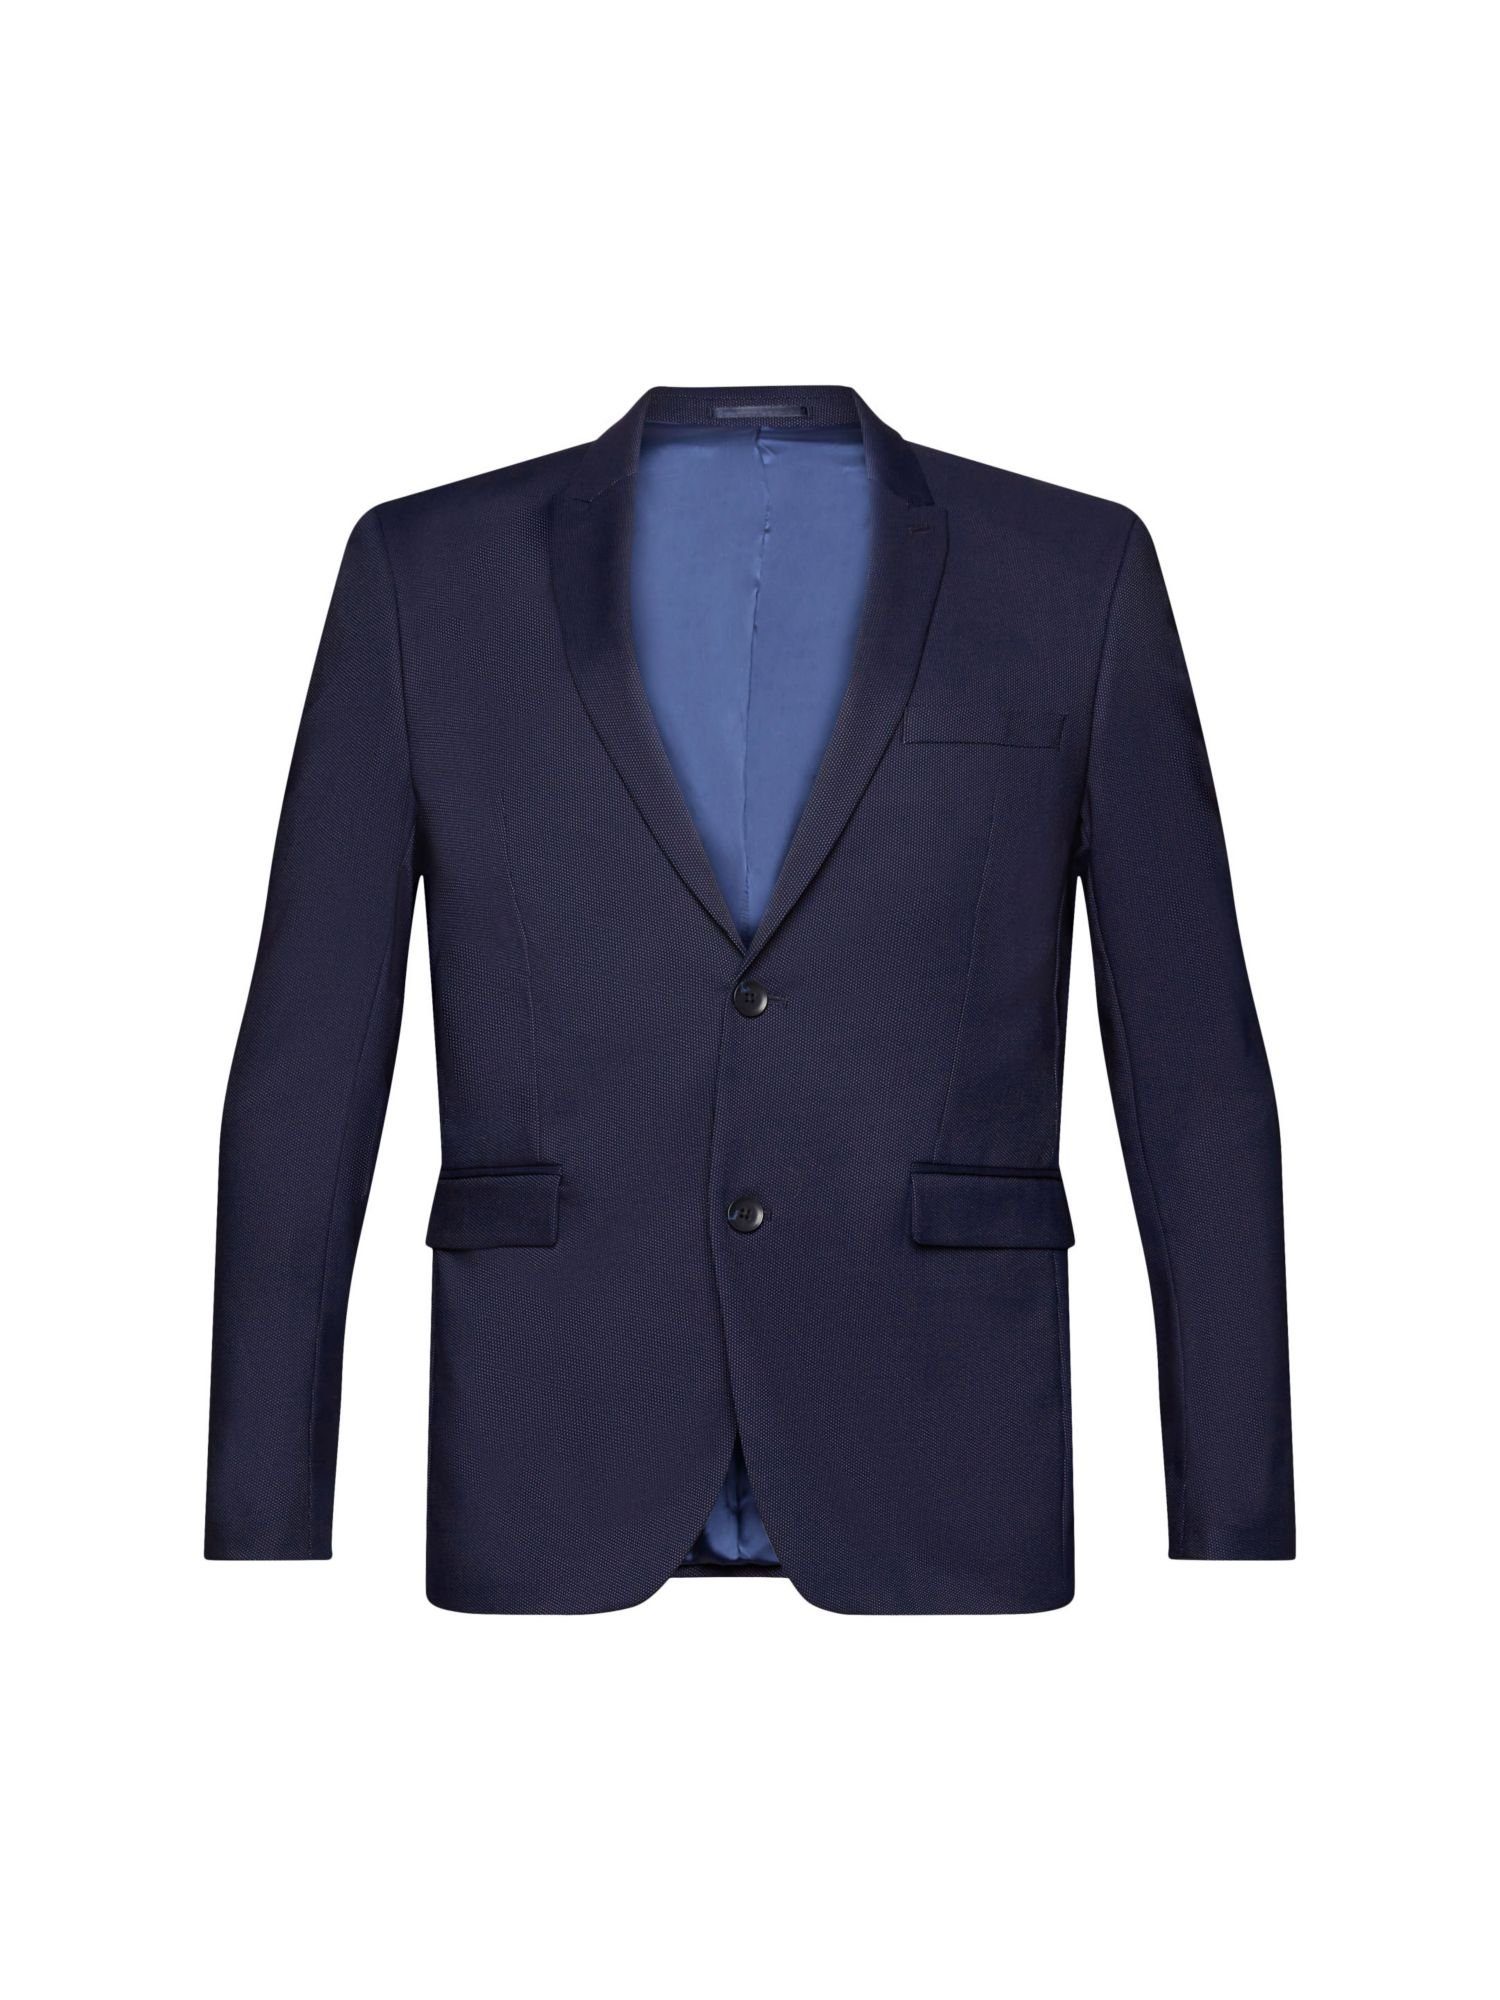 Esprit Collection Anzugsakko Gepunkteter Blazer DARK BLUE | Jackenblazer